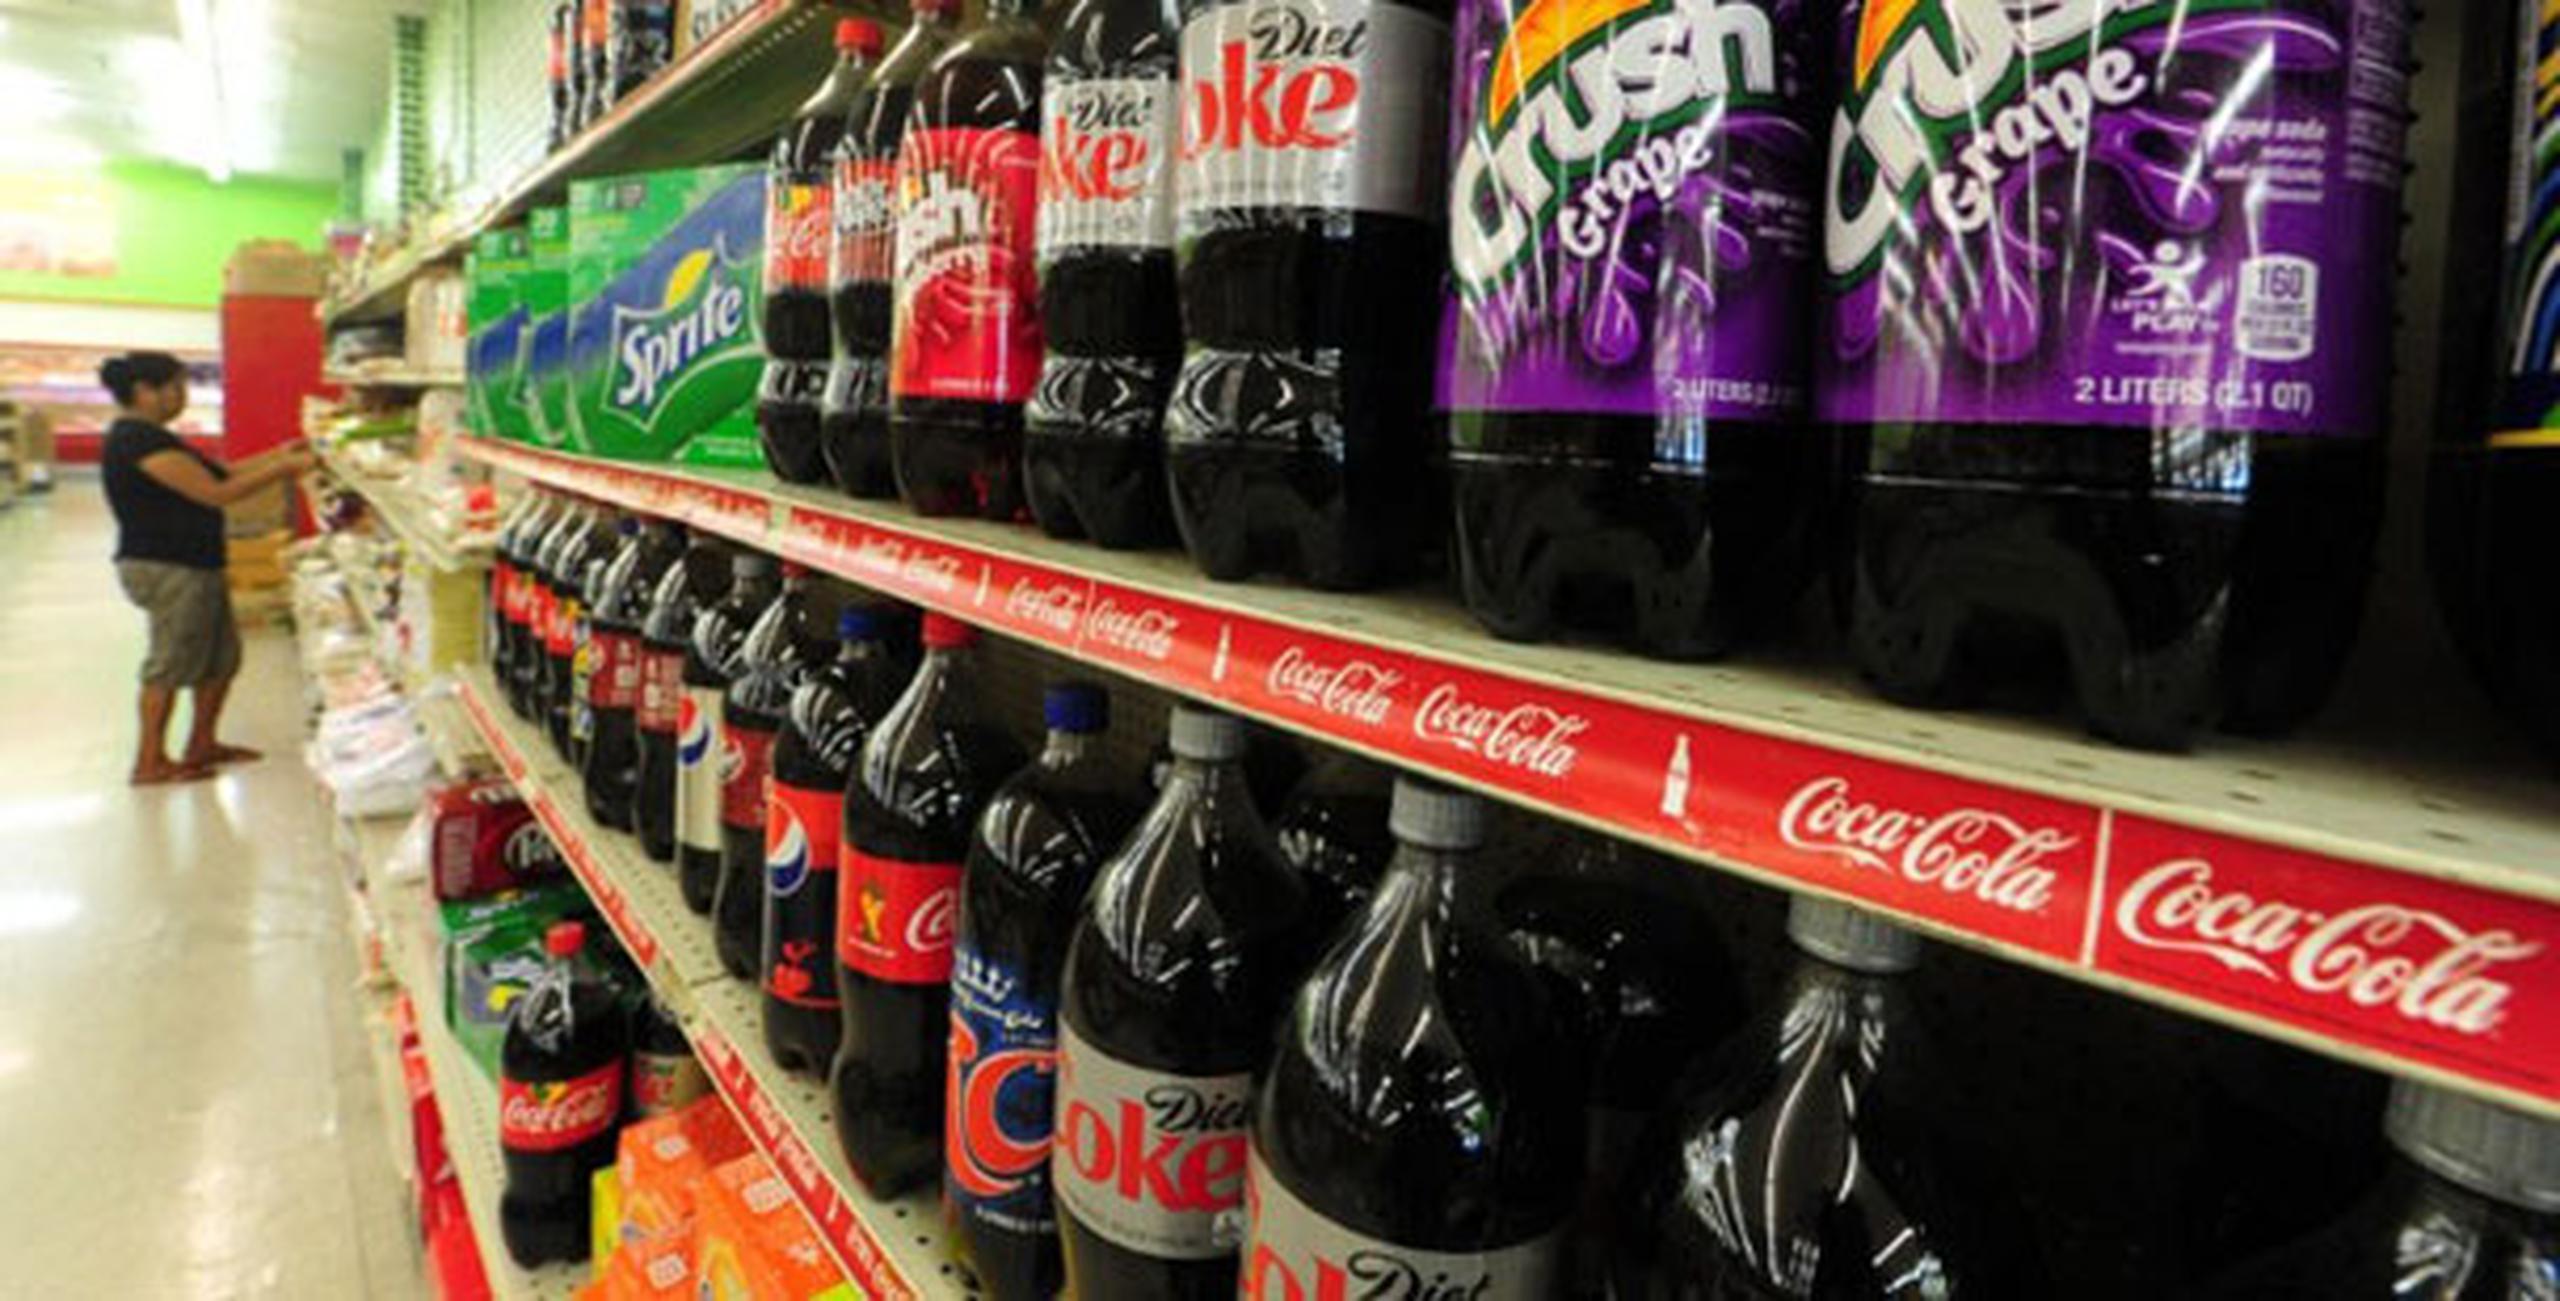 El impuesto contempla el cobro de 14 centavos adicionales por cada litro de refresco. (AFP)